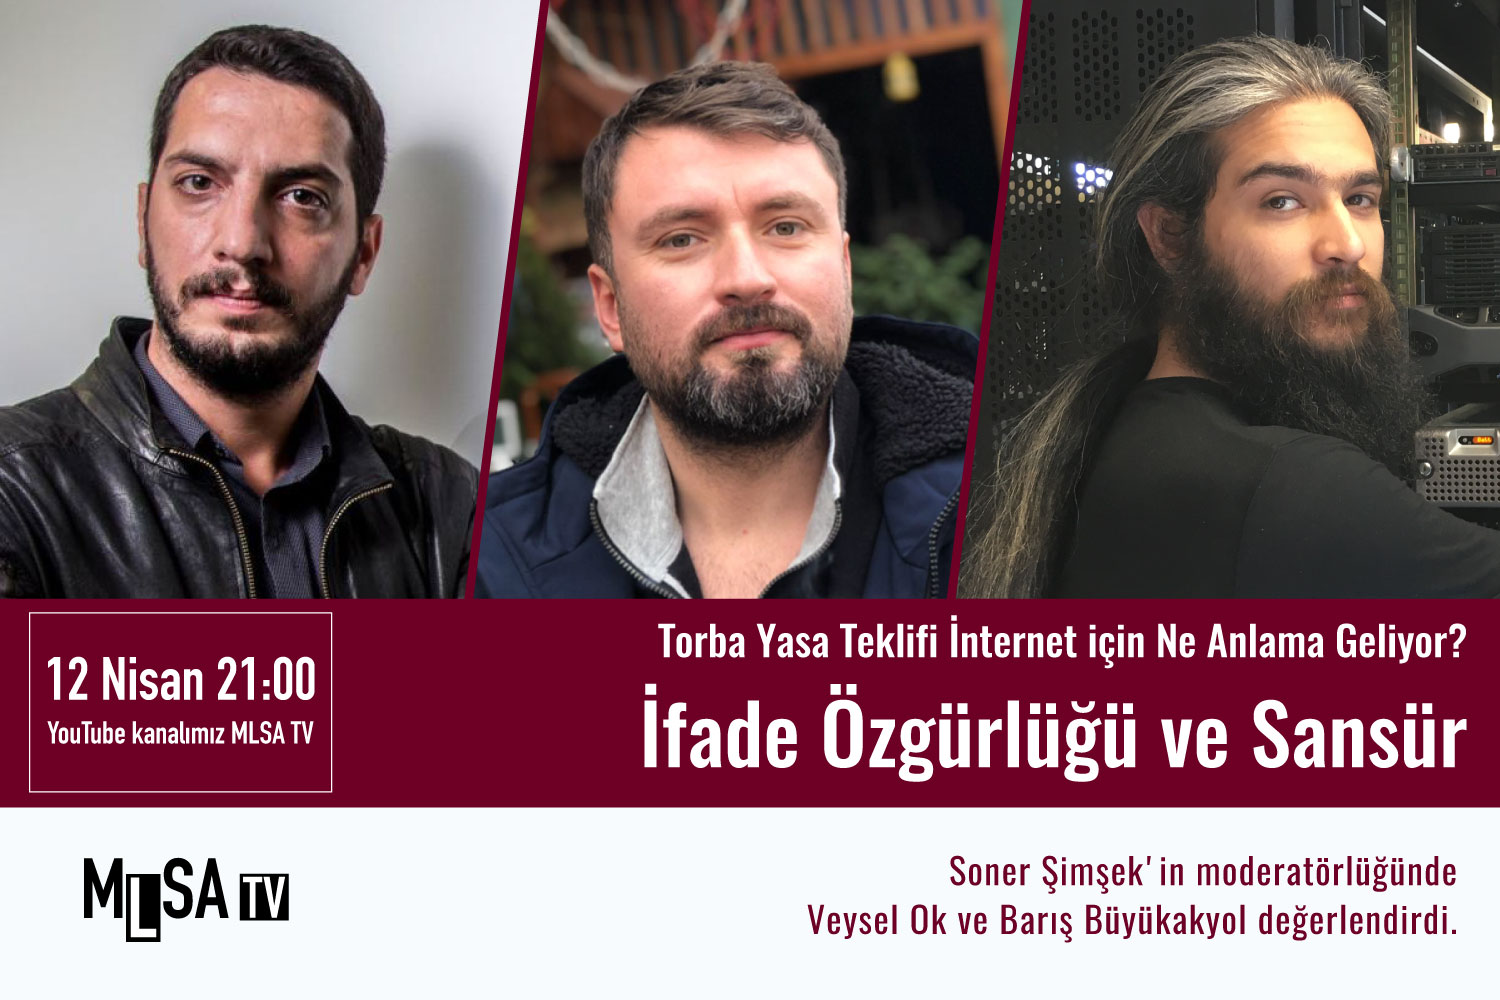 Free Web Turkey platformu MLSA TV'de yeni yasa tasarısından çıkan sosyal medya sansürünü tartıştı